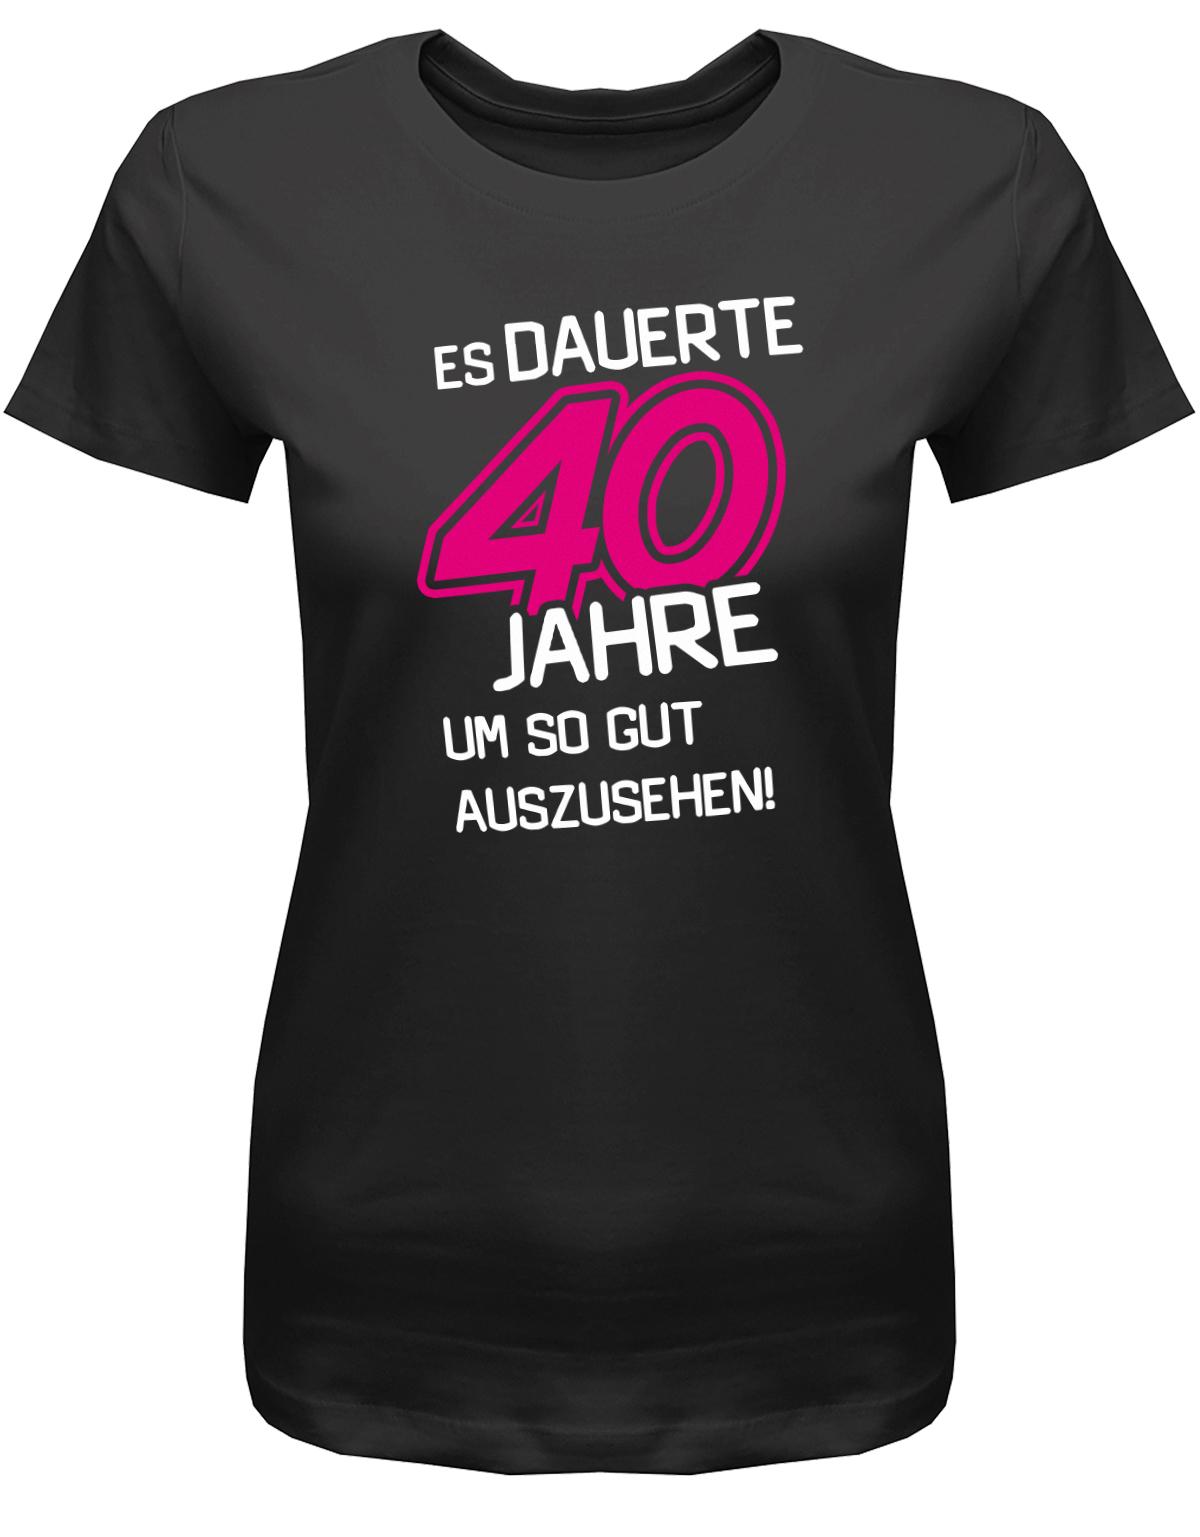 Lustiges T-Shirt zum 40 Geburtstag für die Frau Bedruckt mit Es dauerte 40 Jahre, um so gut auszusehen! SChwarz